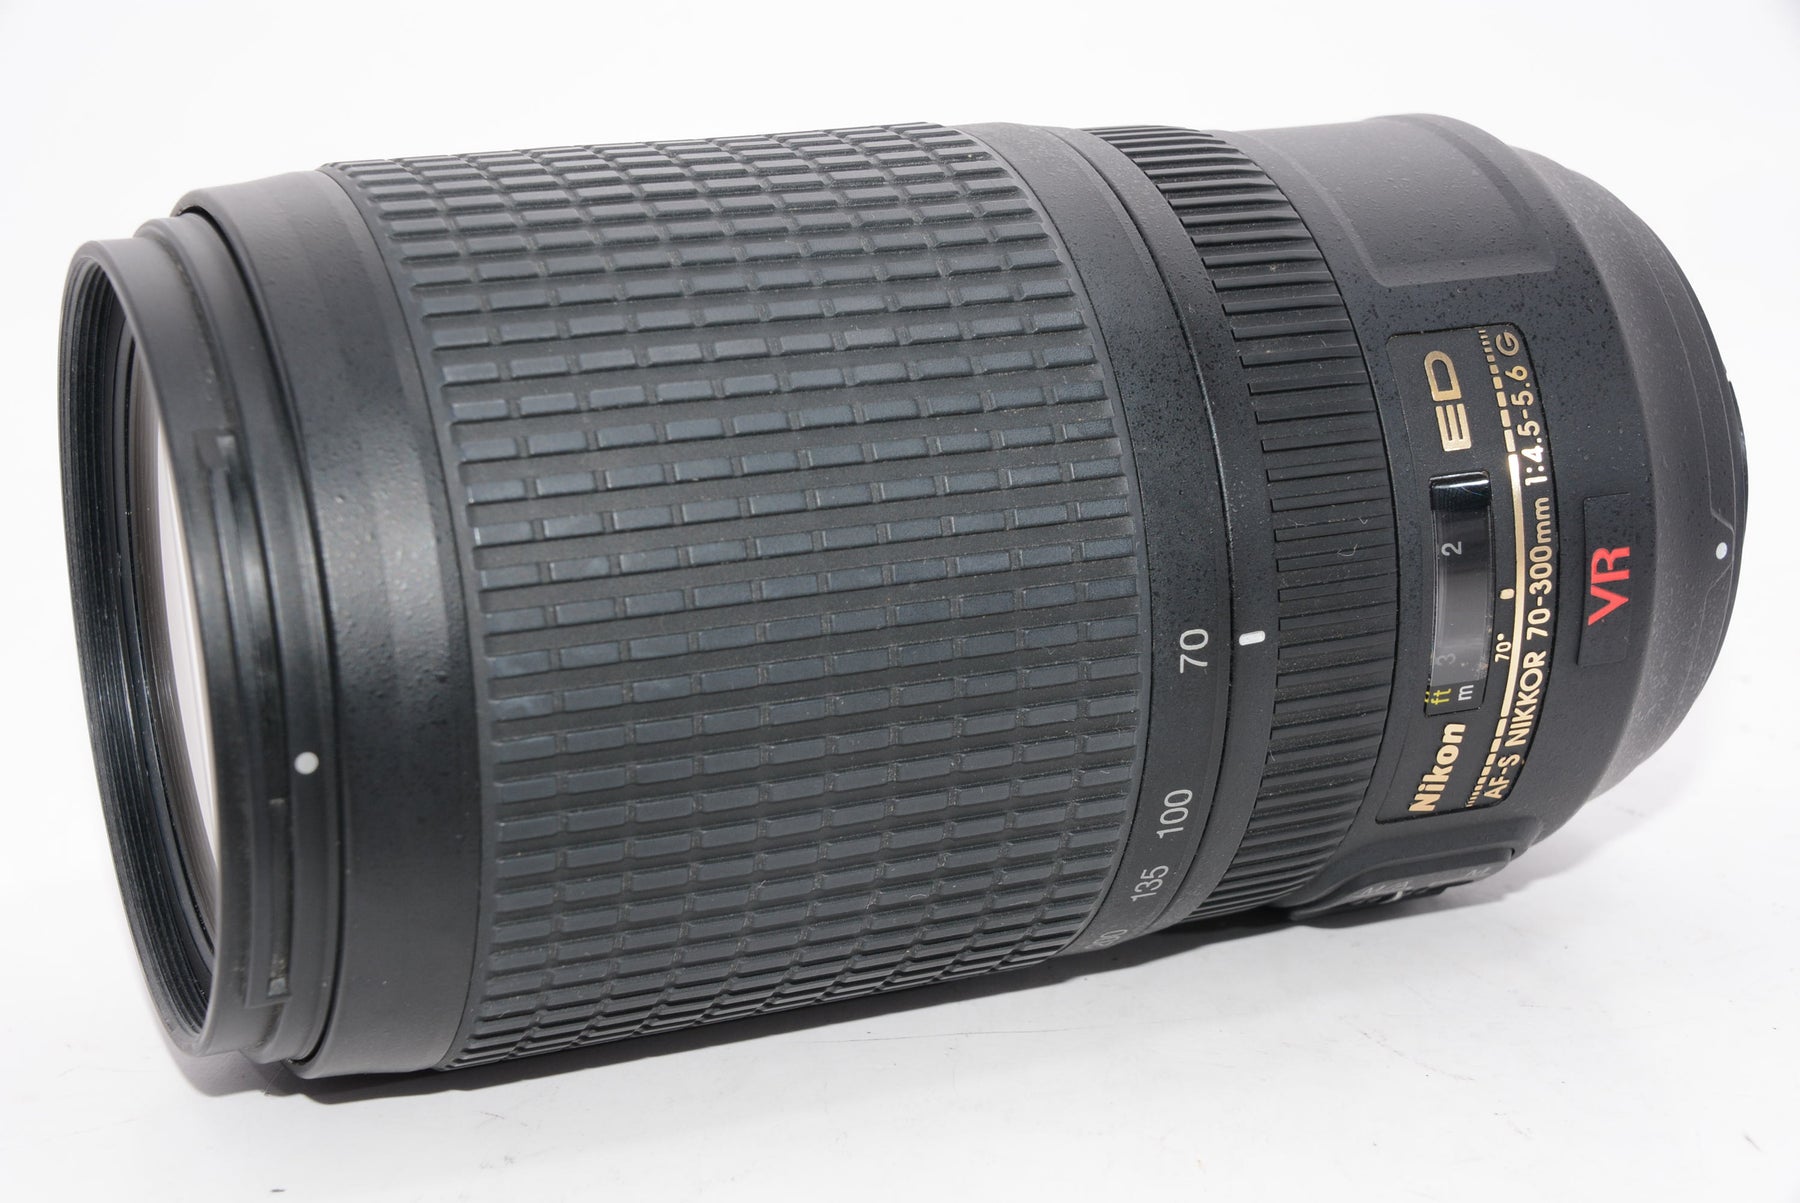 Nikon 望遠ズームレンズ AF-S VR Zoom Nikkor 70-300mm f/4.5-5.6G IF